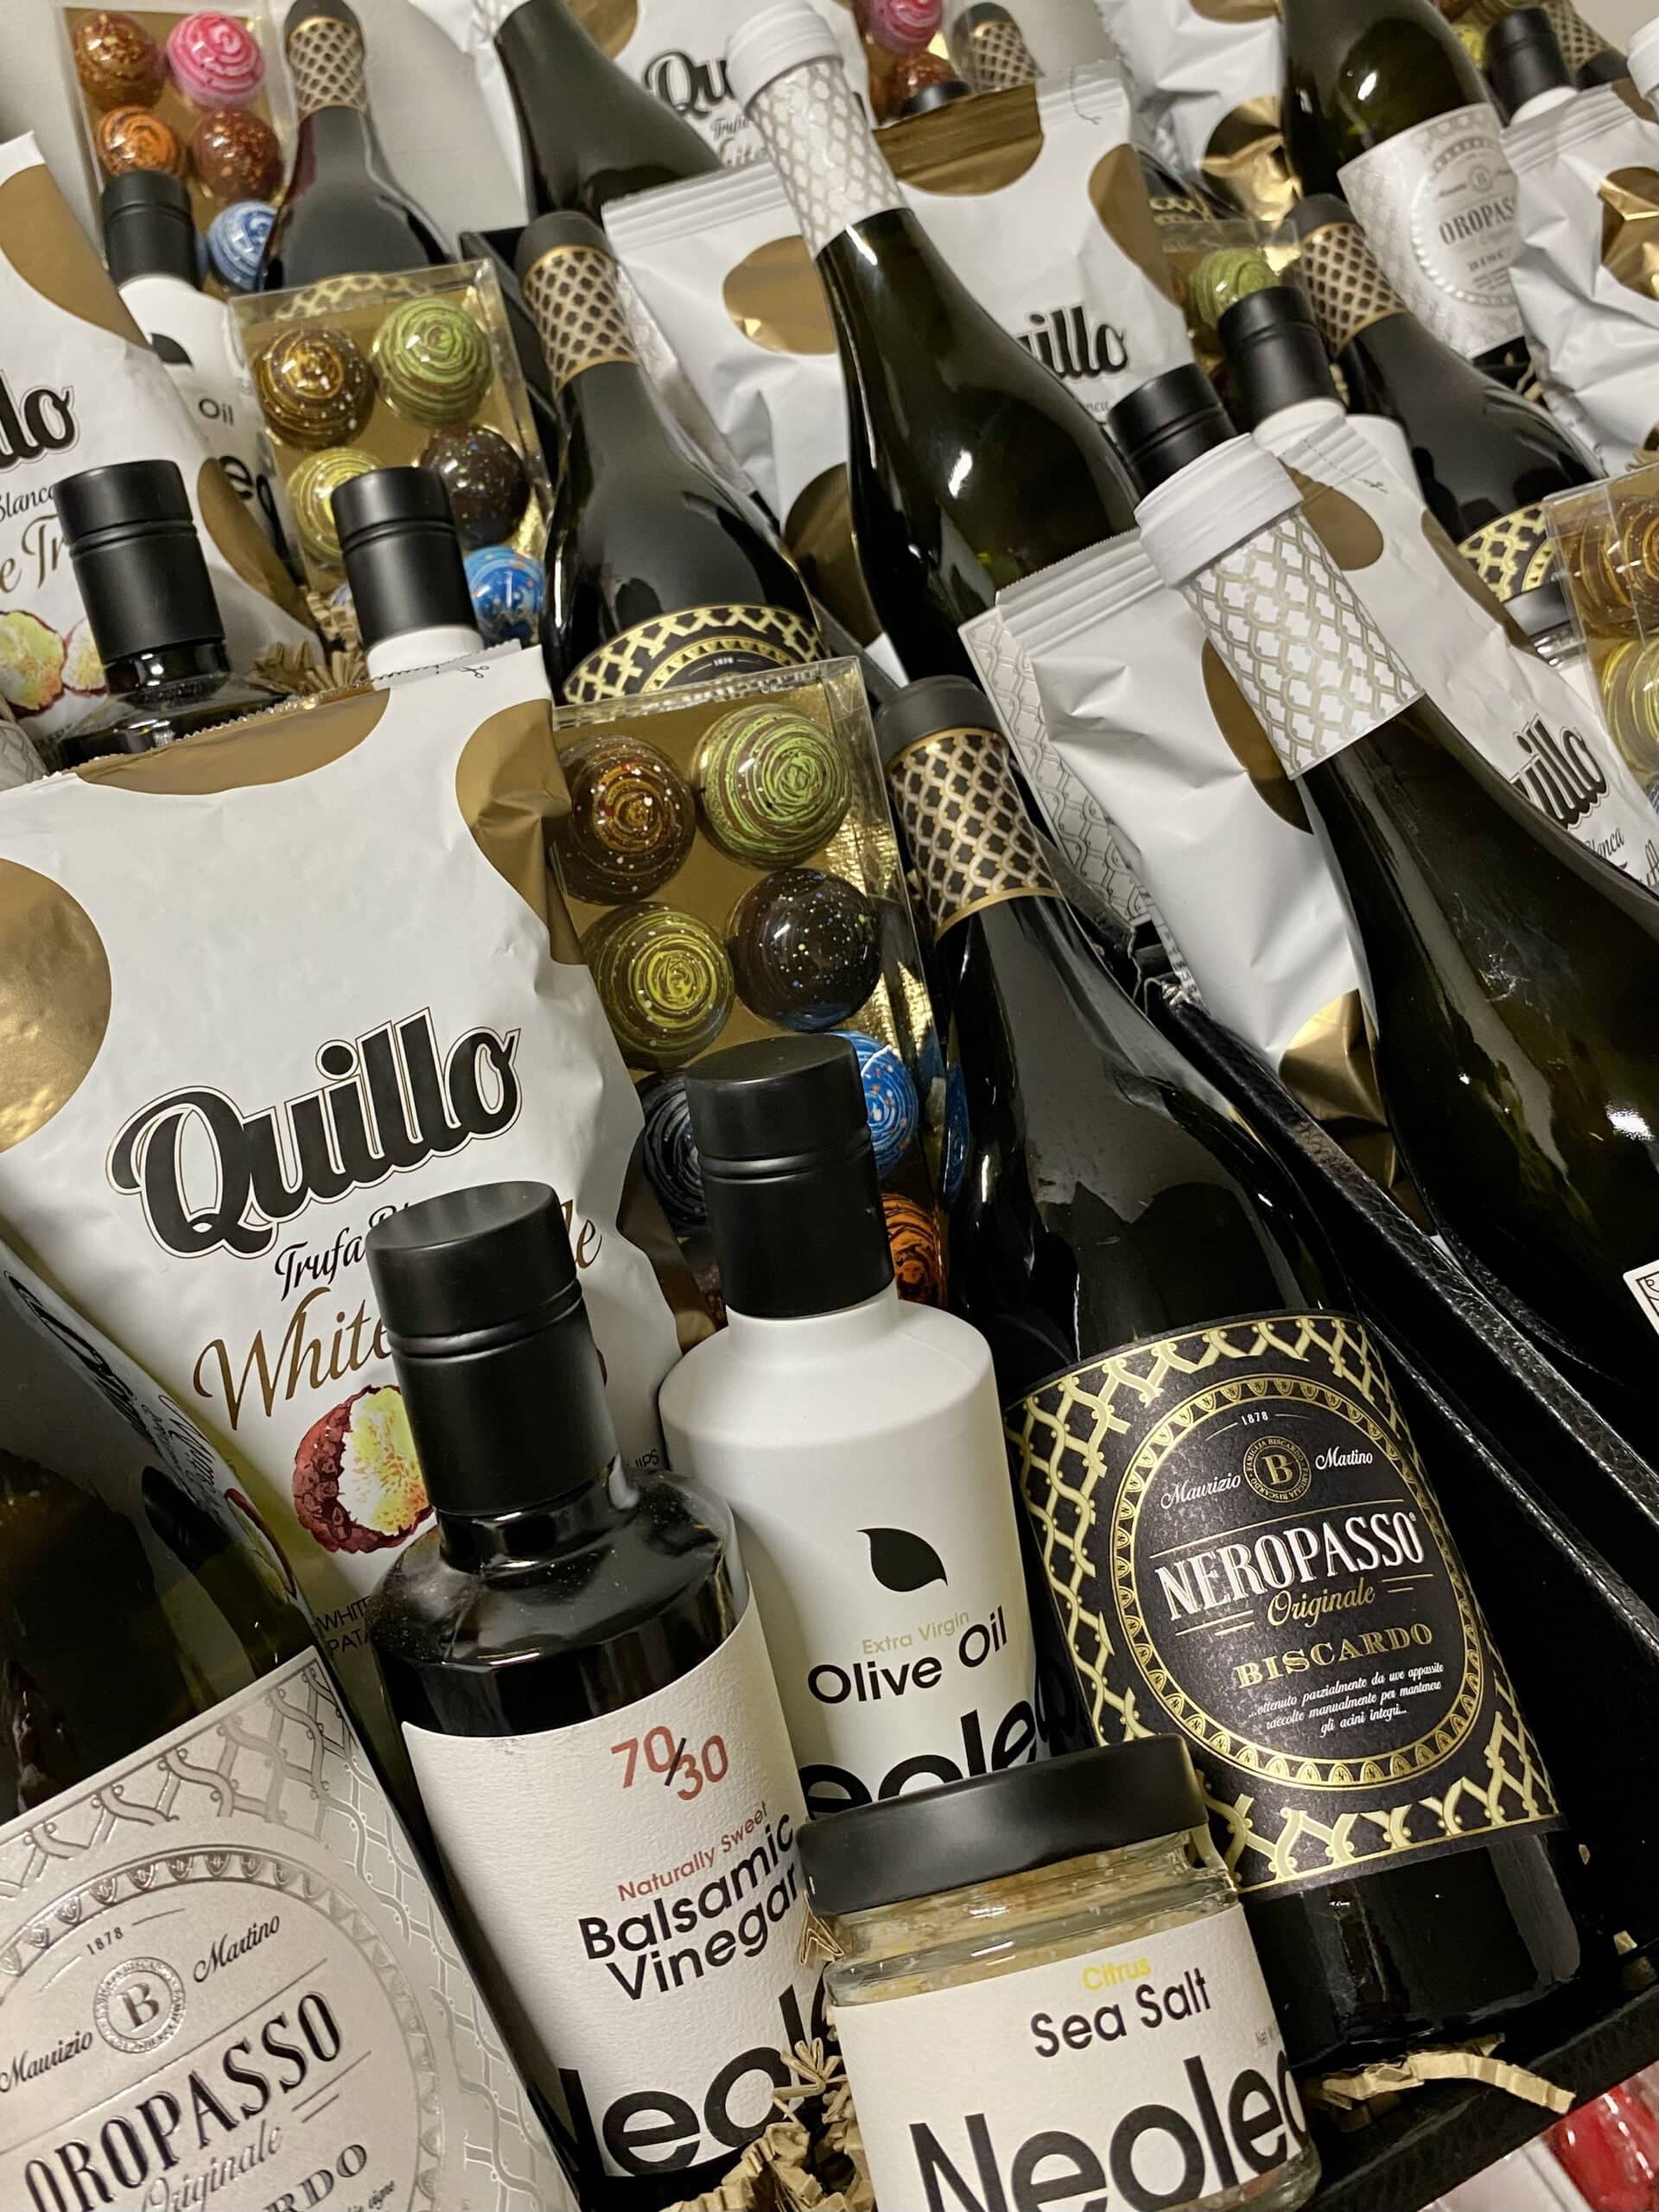 Pakketten met onze icon producten als Neolea olijfolie, Neropasso wijn en Picasso bonbons.